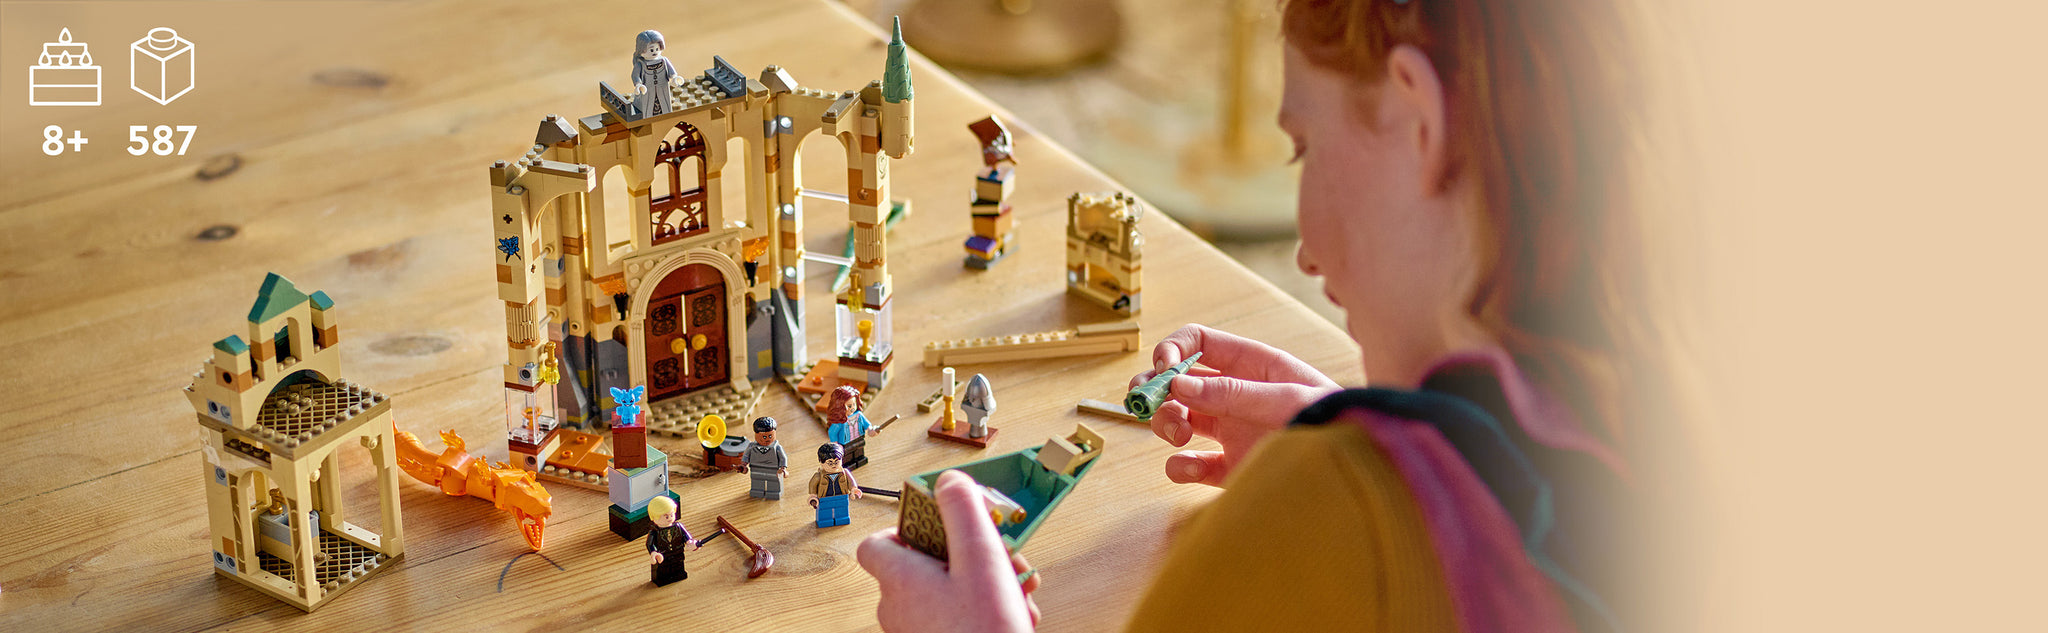 LEGO 76413 Hogwarts™: Raum der Wünsche